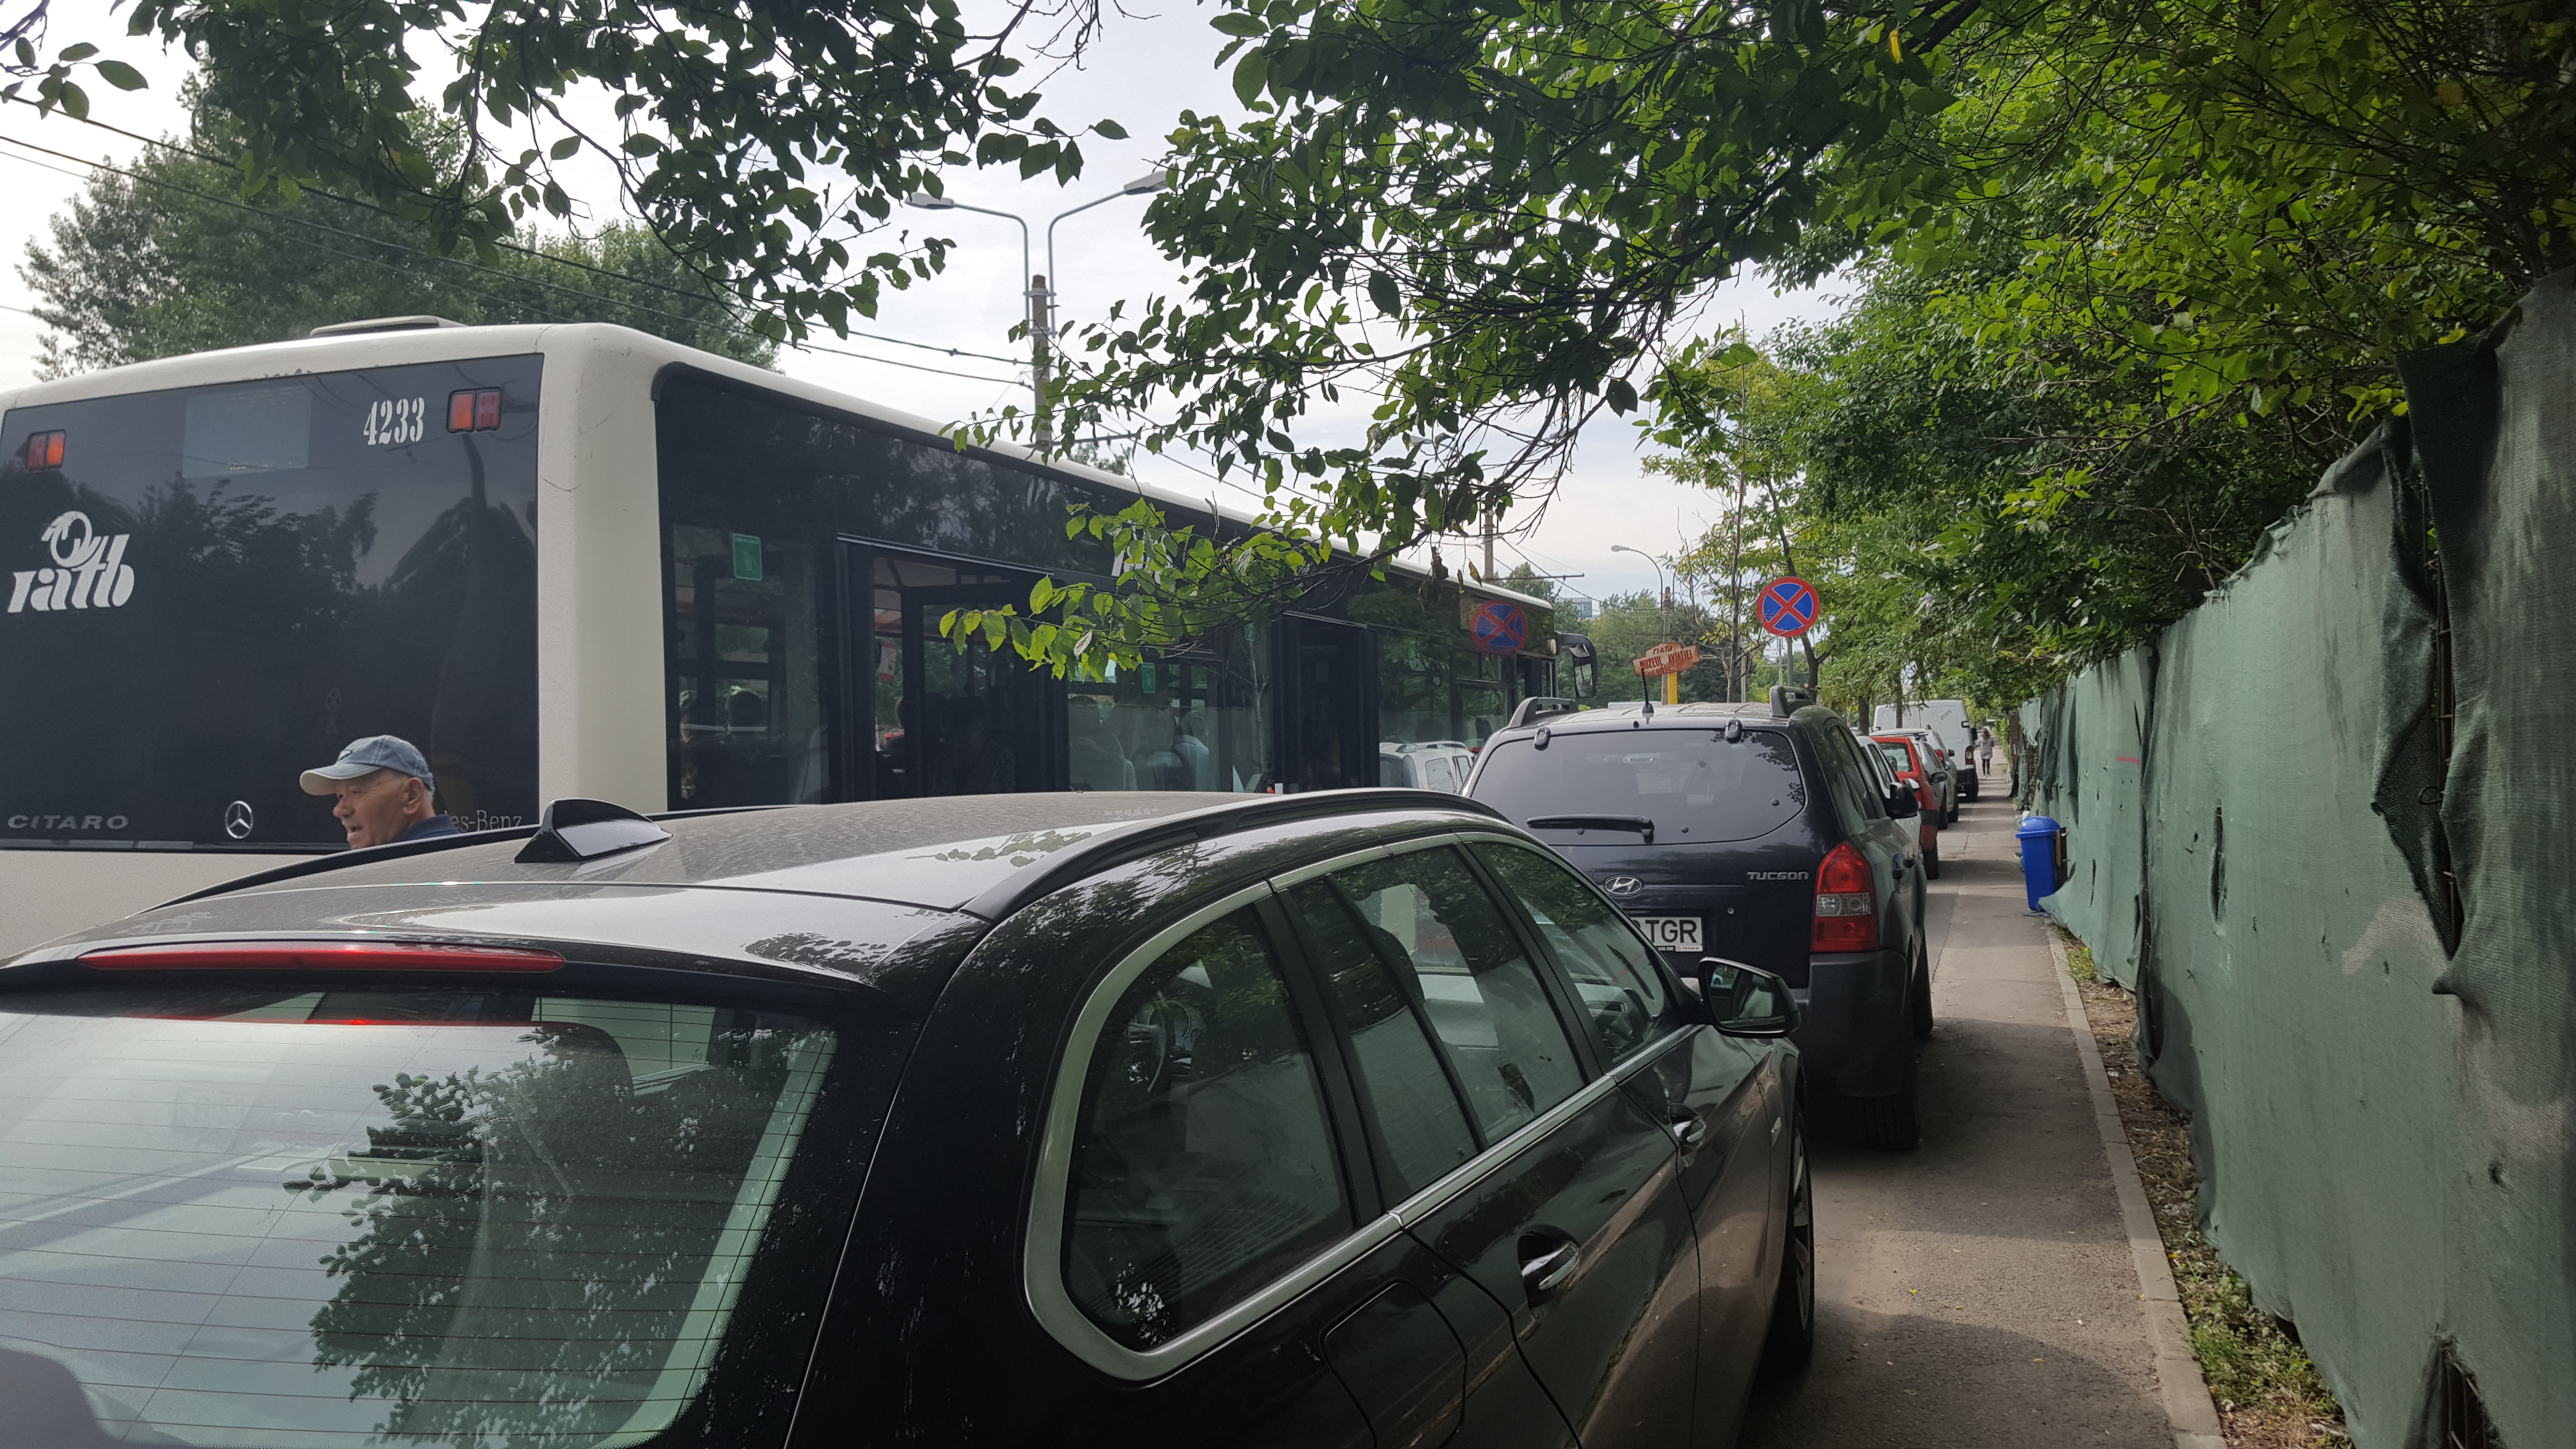 Noile autobuze din Bucureşti vor avea culoarea turcoaz. În cele de acum plouă, aerul condiţionat lipseşte, iar călătorii le aşteaptă printre maşinile parcate pe trotuar